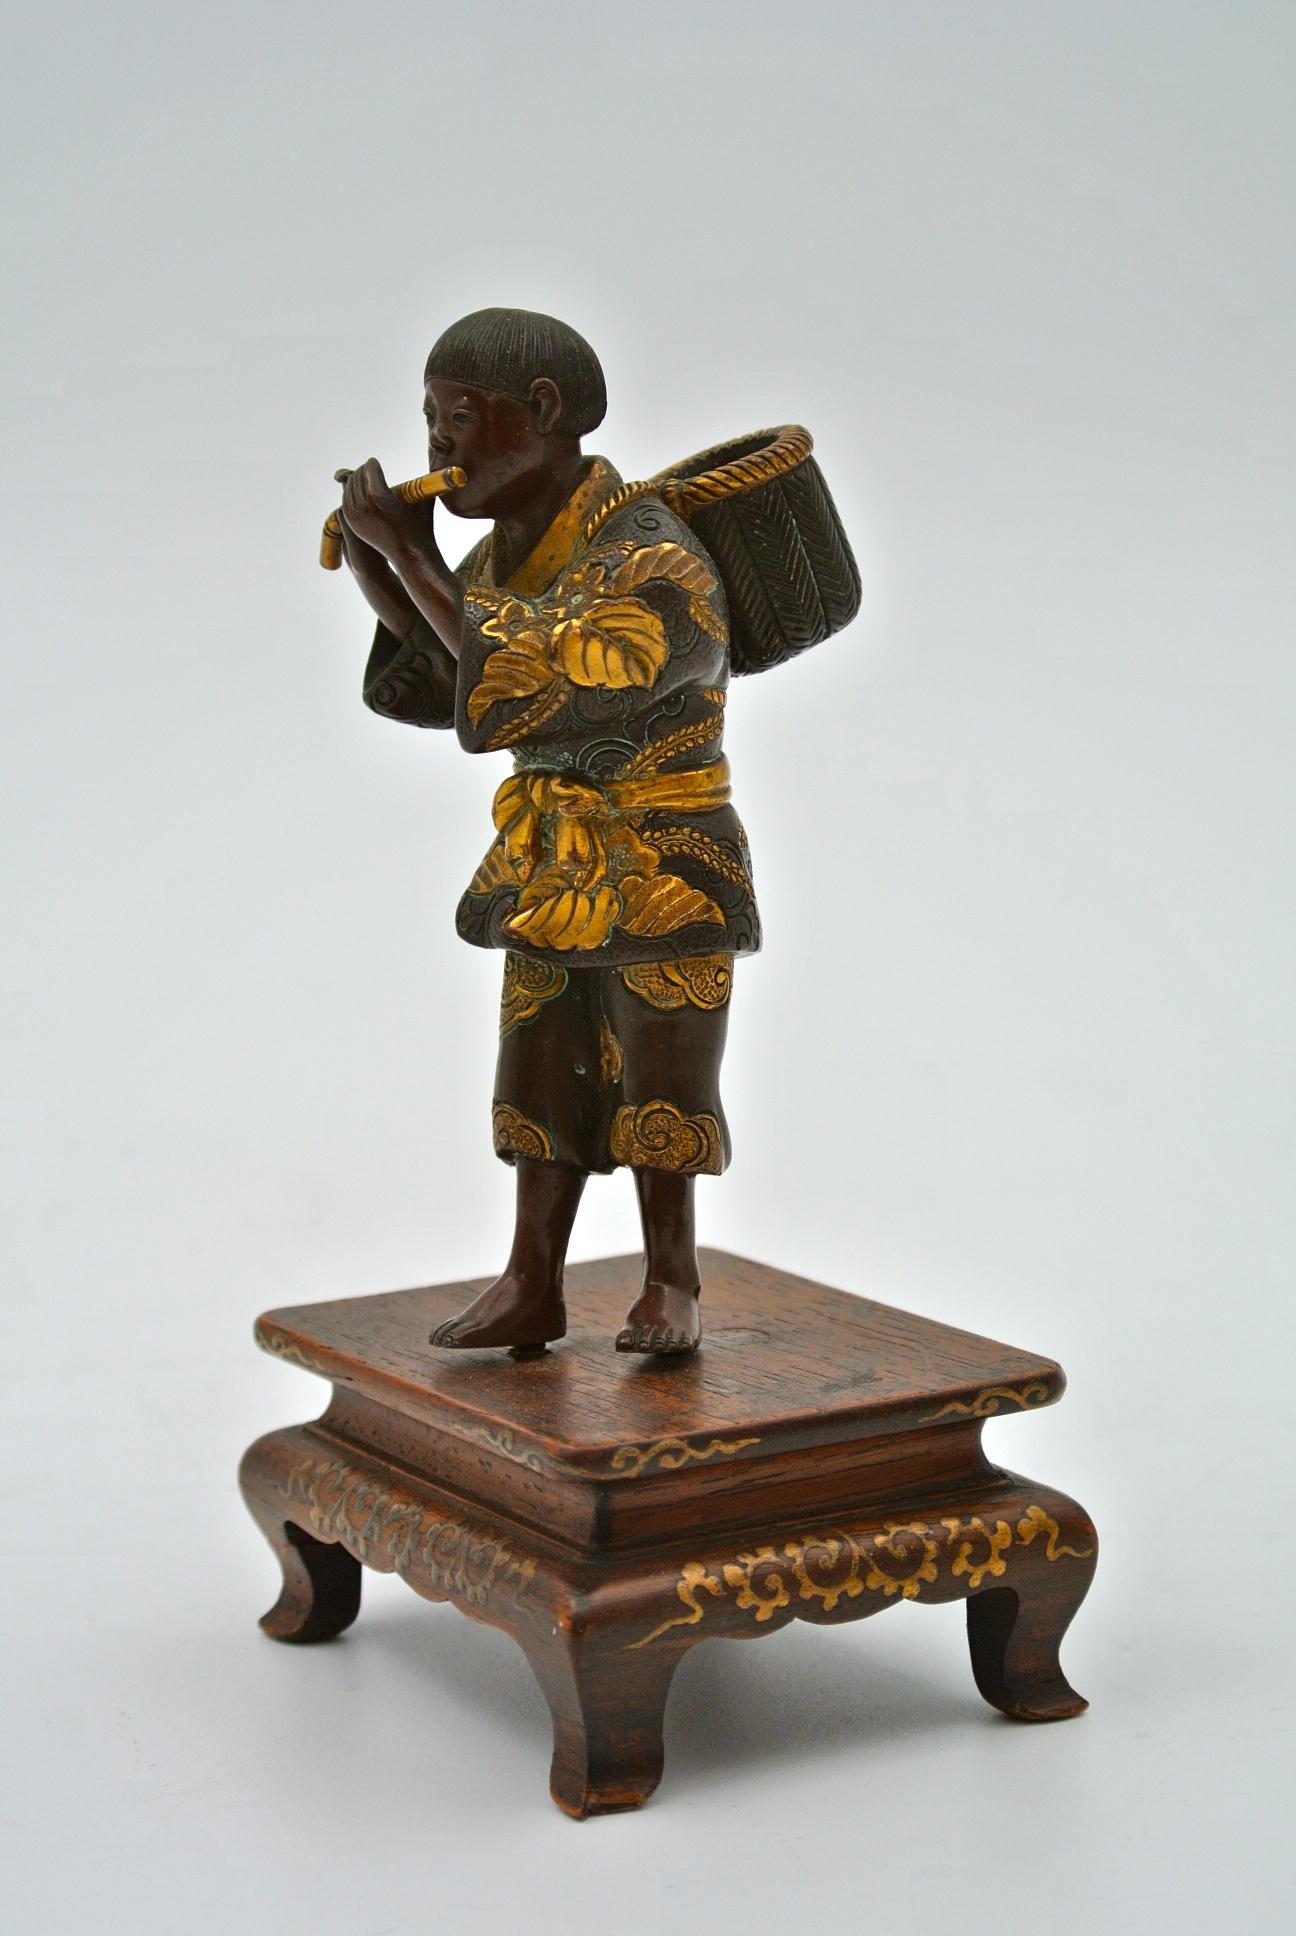 Japanische Bronze von Miyao in patinierter und vergoldeter Bronze auf Holzsockel, 19. Jahrhundert, Japan, Meji-Periode.
Maße: H 13 cm, B 7 cm, T 6 cm.